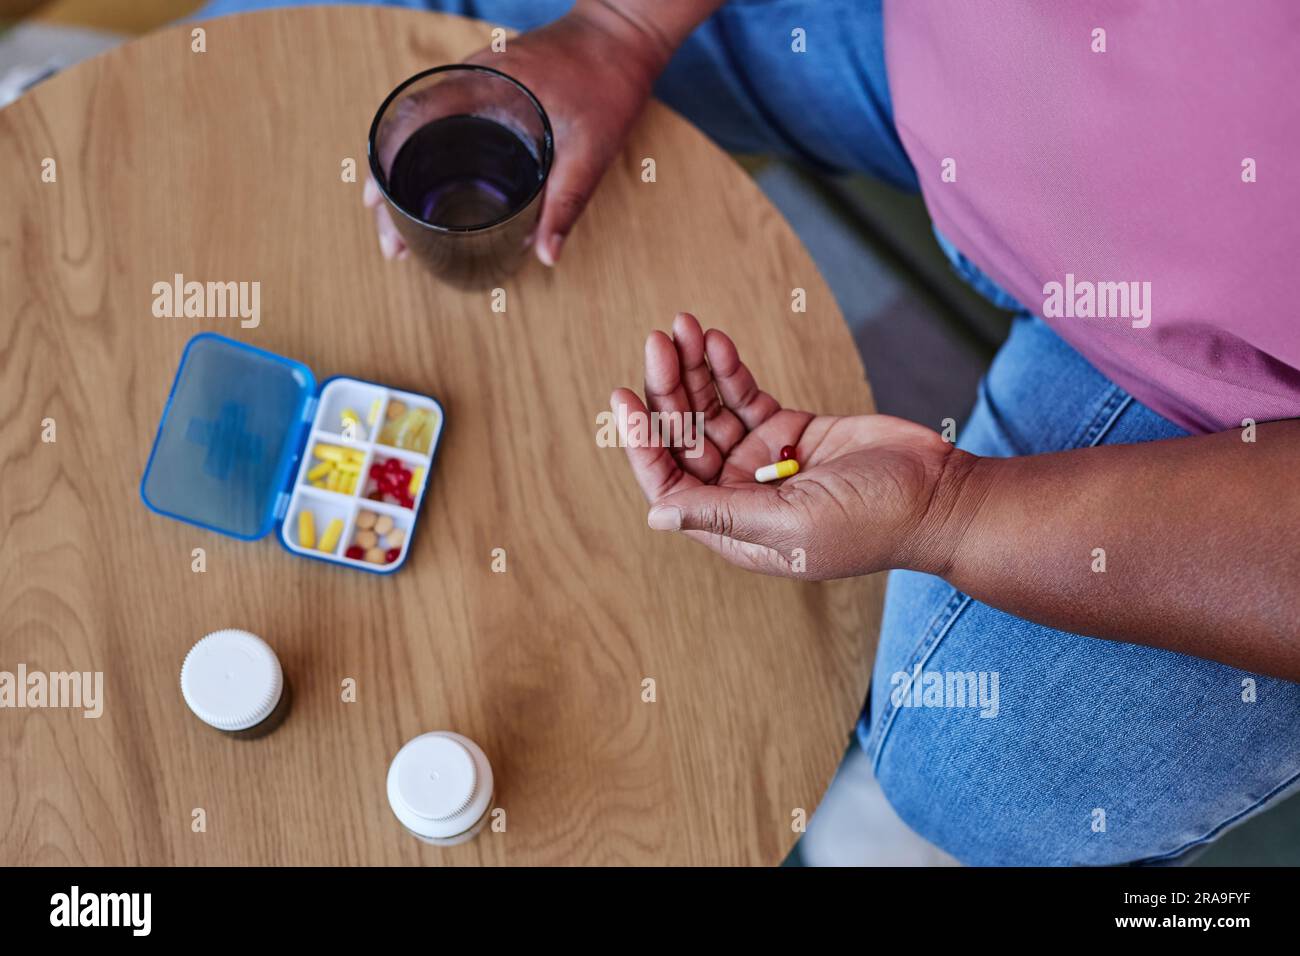 Über dem Winkel einer alten afroamerikanischen Frau in blauen Jeans und rosa T-Shirt, die Pillen nimmt, während sie mit Behälter und Flaschen am Tisch sitzt Stockfoto